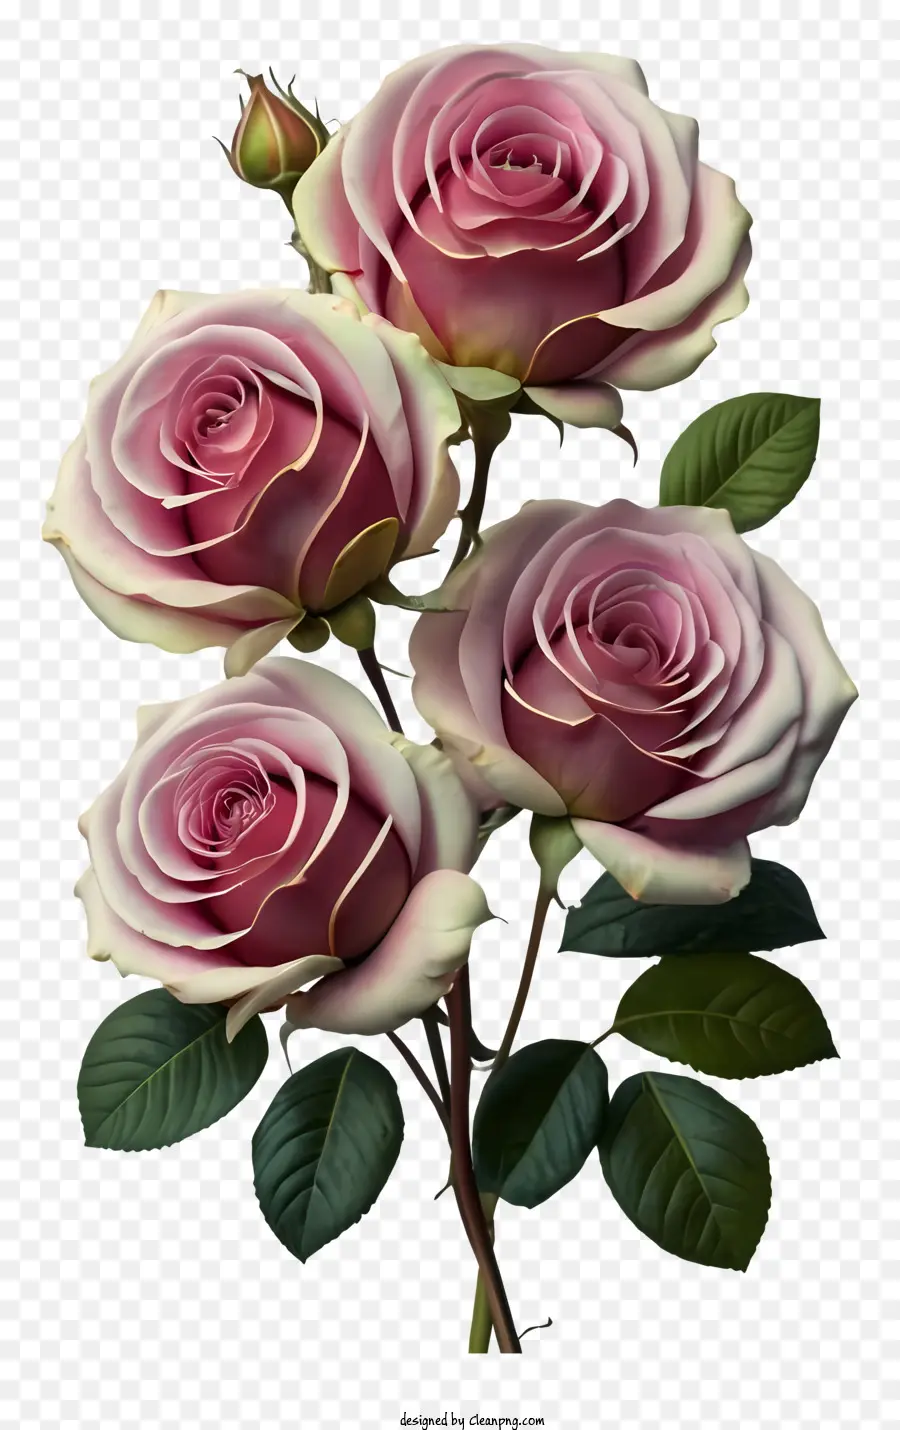 hoa hồng - Sự sắp xếp đối xứng của hoa hồng màu hồng với sự thanh lịch